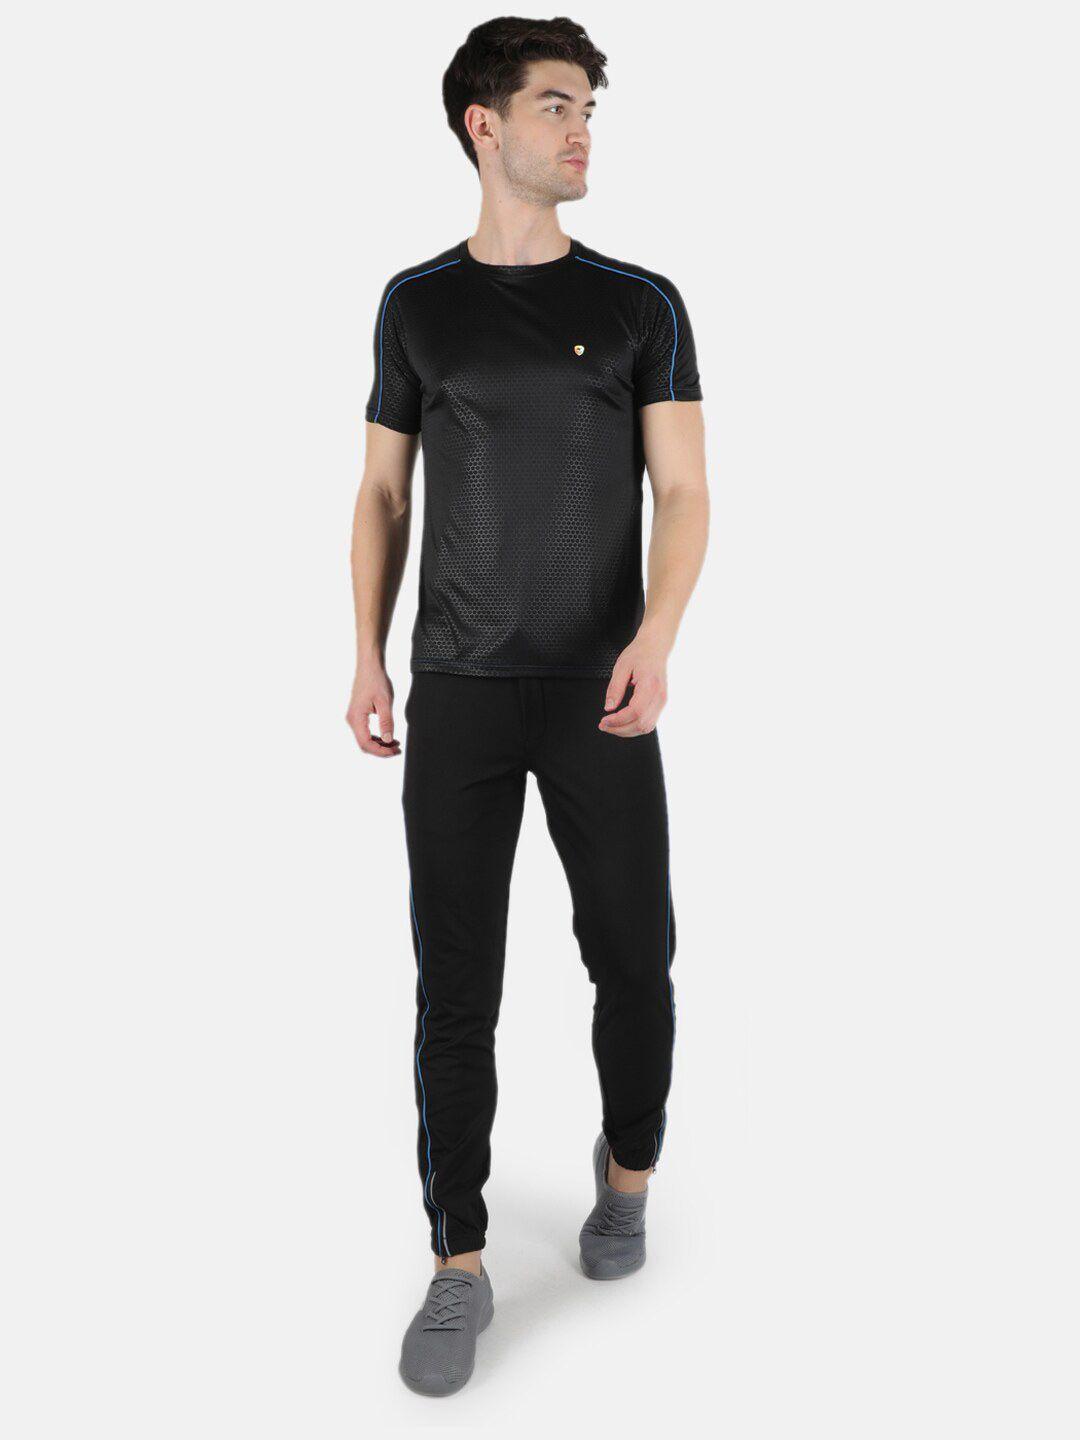 monte-carlo-men-black-printed-t-shirt-with-pyjamas